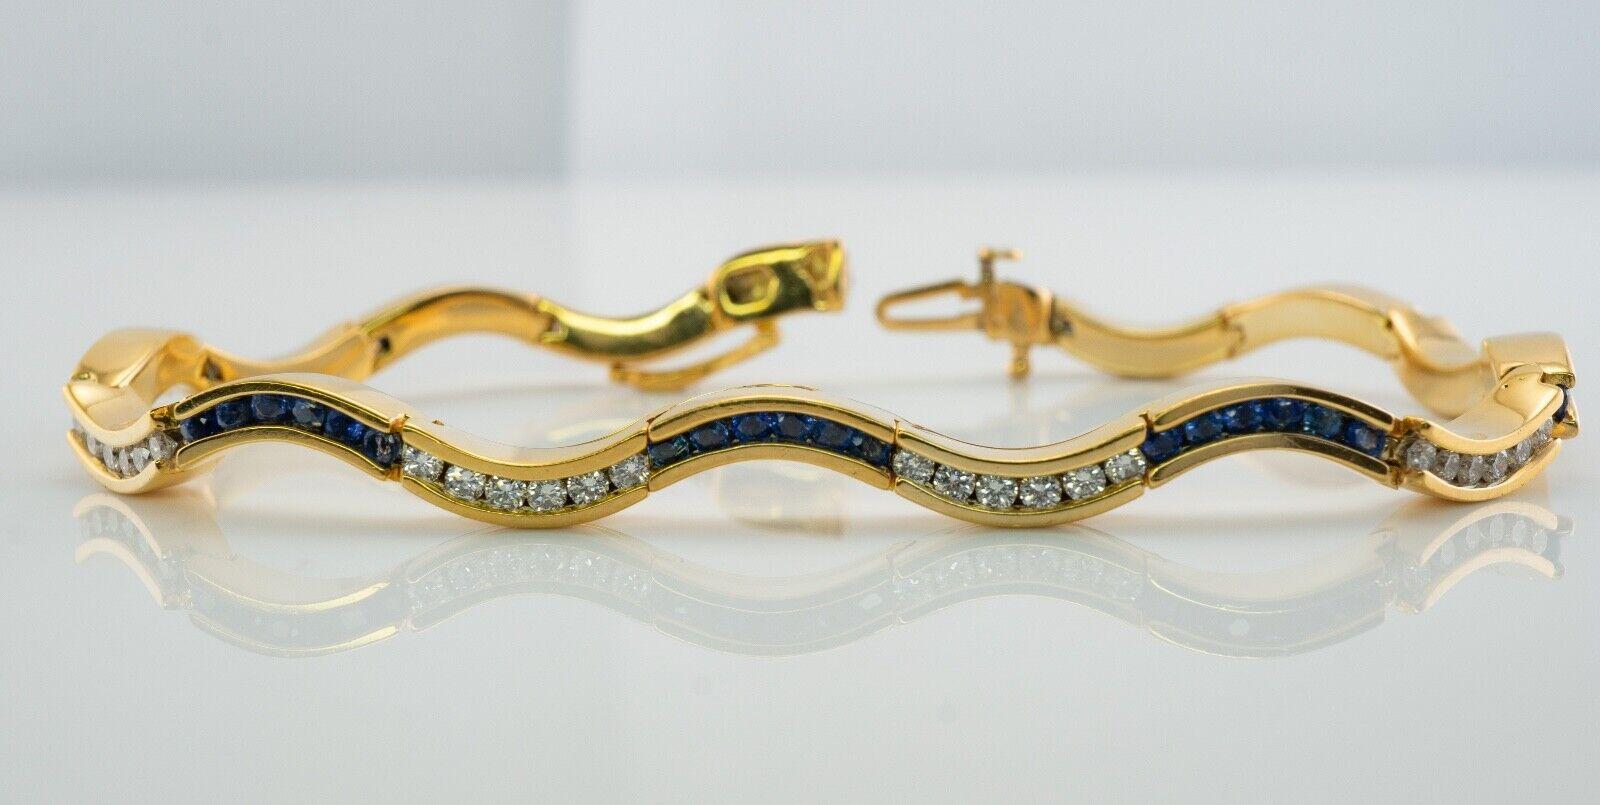 Armband 14K Gold Wave Curvy mit Diamanten und Saphiren, geschwungen

Dieses fantastische Saphir-Diamant-Armband ist aus massivem 14K Gelbgold gefertigt. Es gibt 8 Glieder mit echten blauen Saphiren aus Erdminen und 8 Glieder mit Diamanten. Jeder